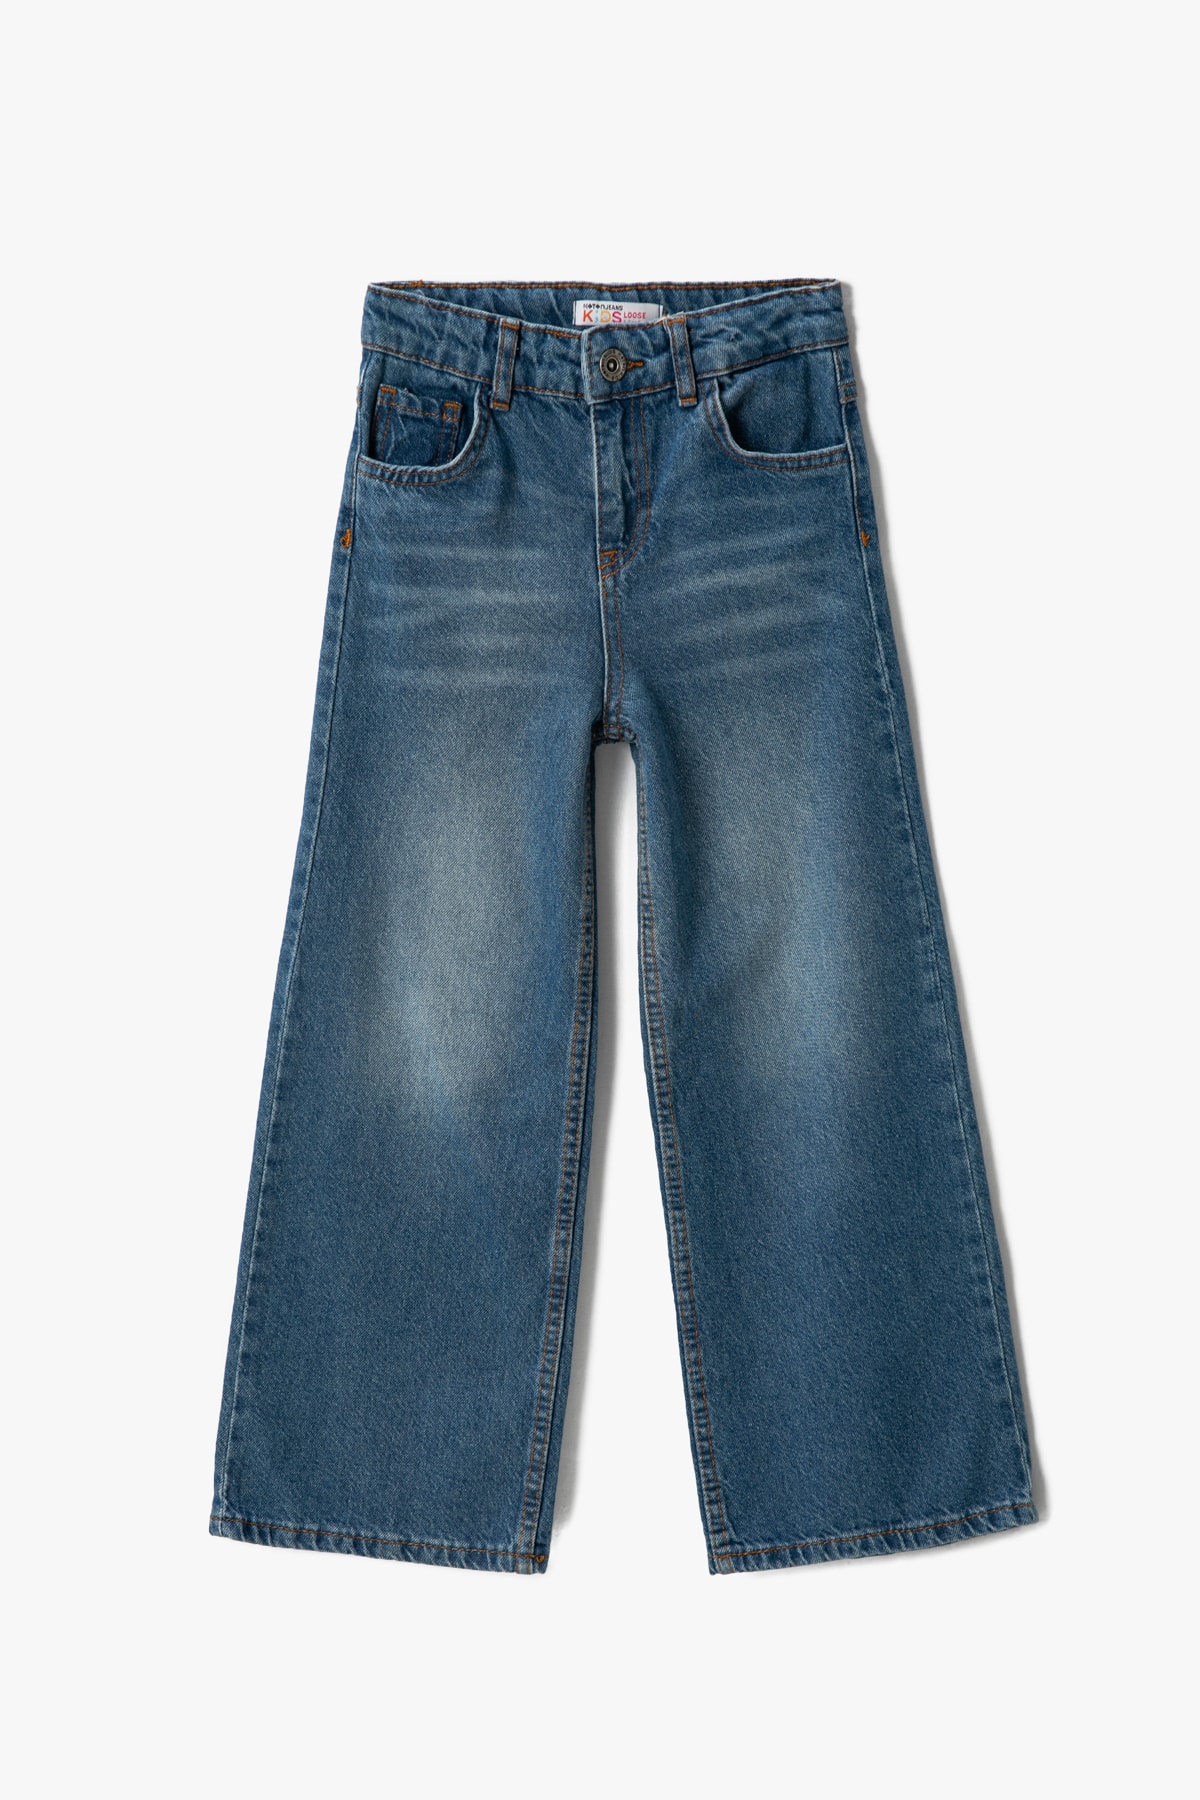 Levně Koton Girl's Dark Indigo Jeans